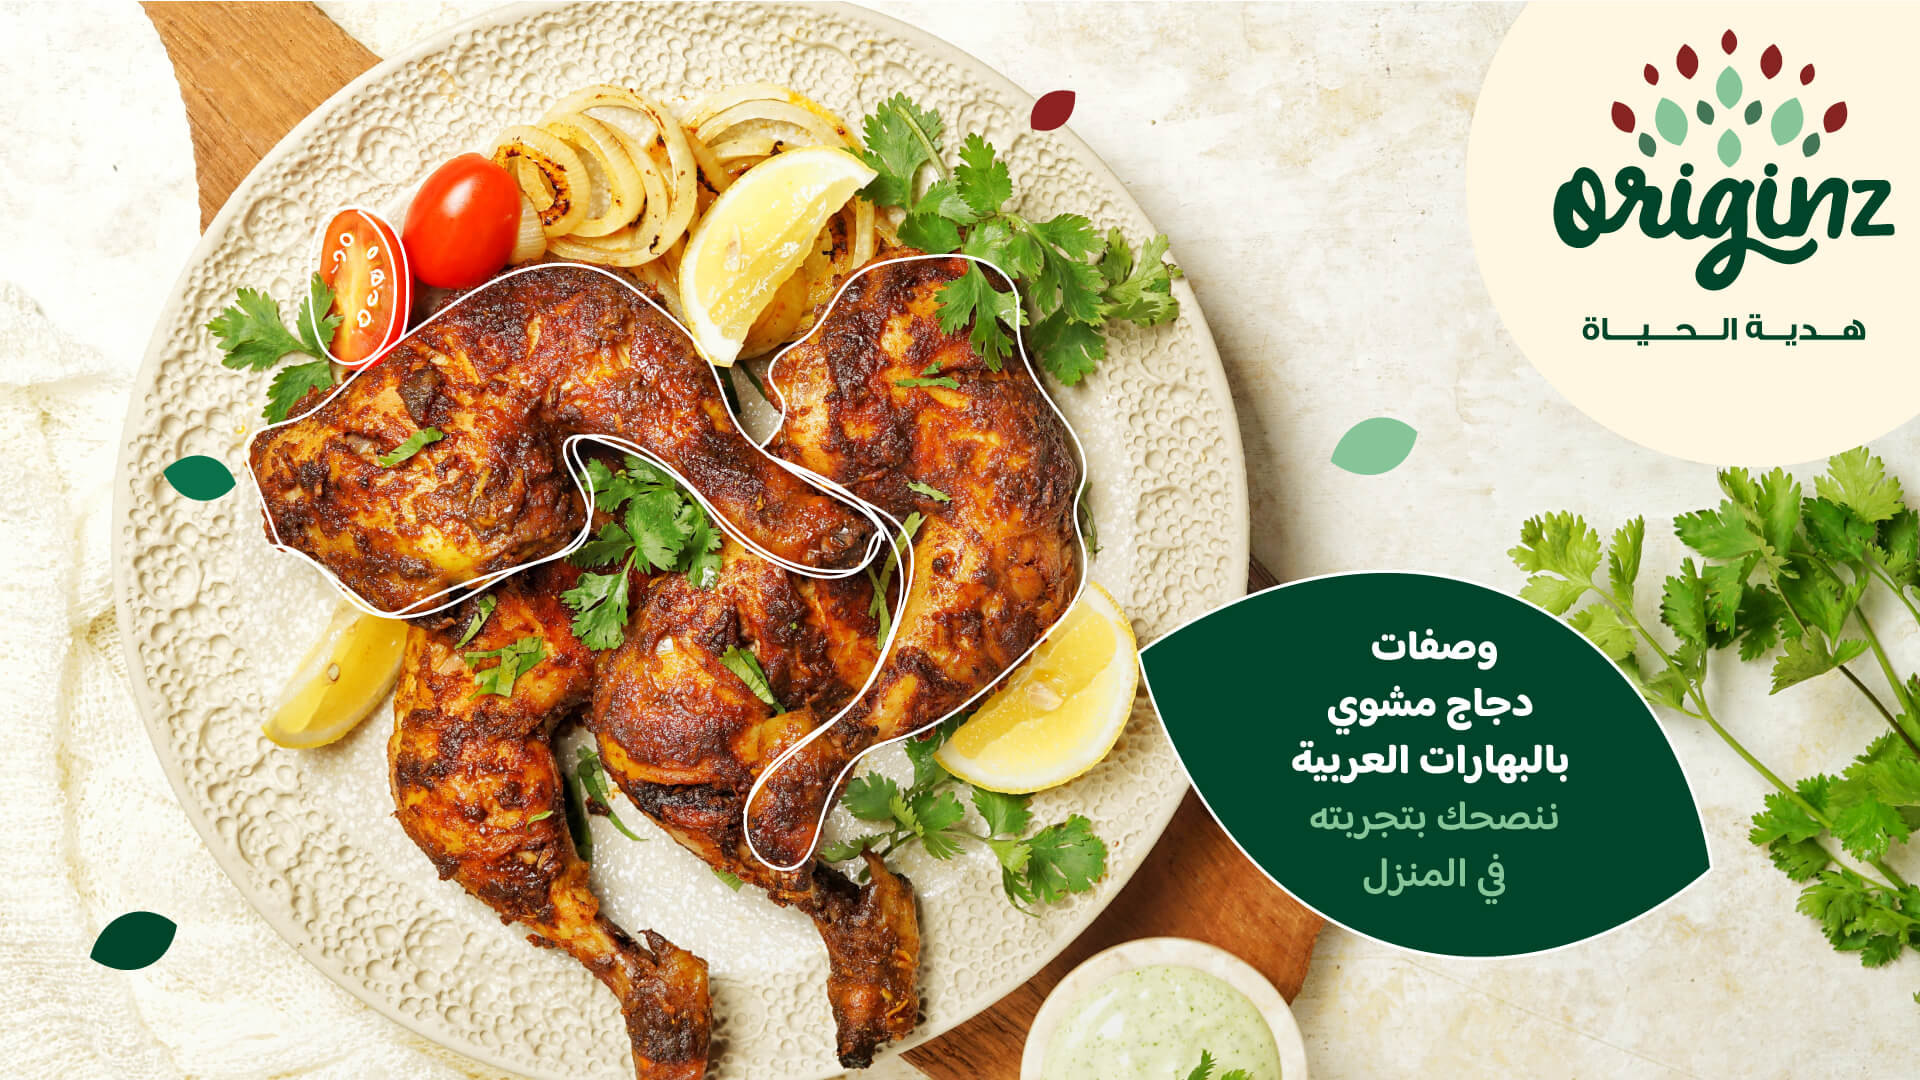 وصفات دجاج مشوي بالبهارات العربية ننصحك بتجربتها في المنزل